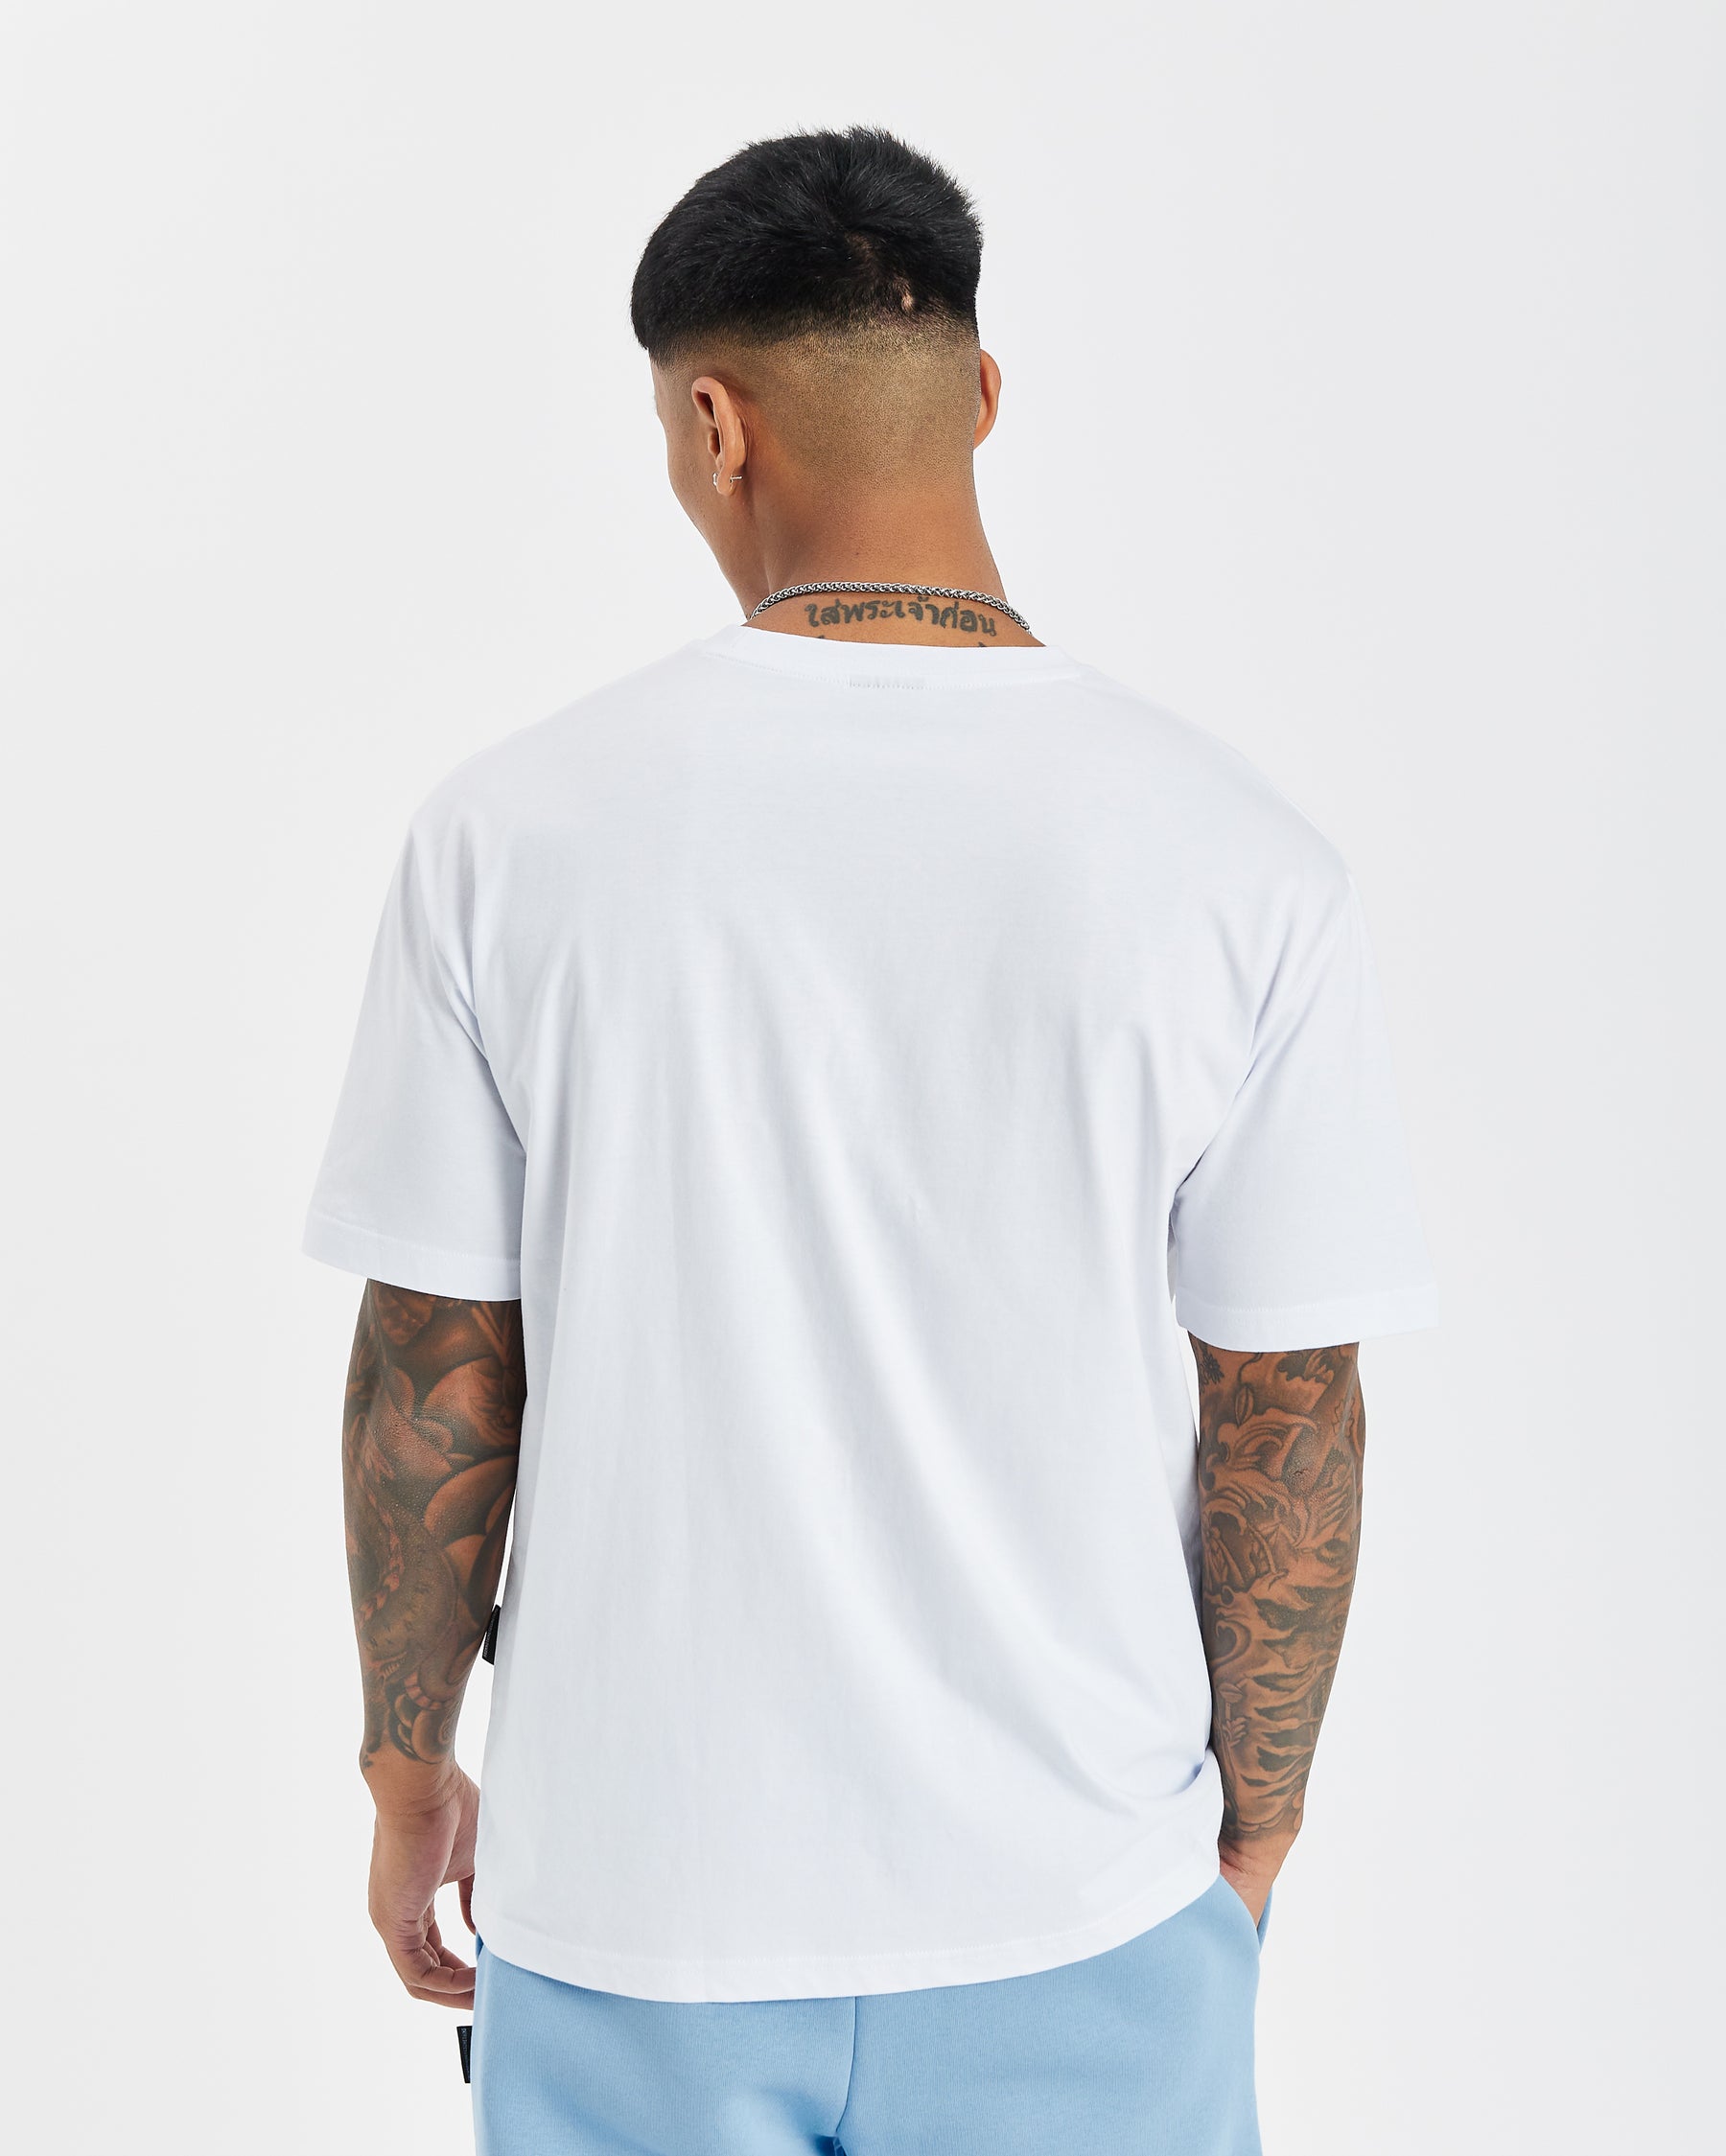 OG Kraze T-shirt - White/Sky Blue